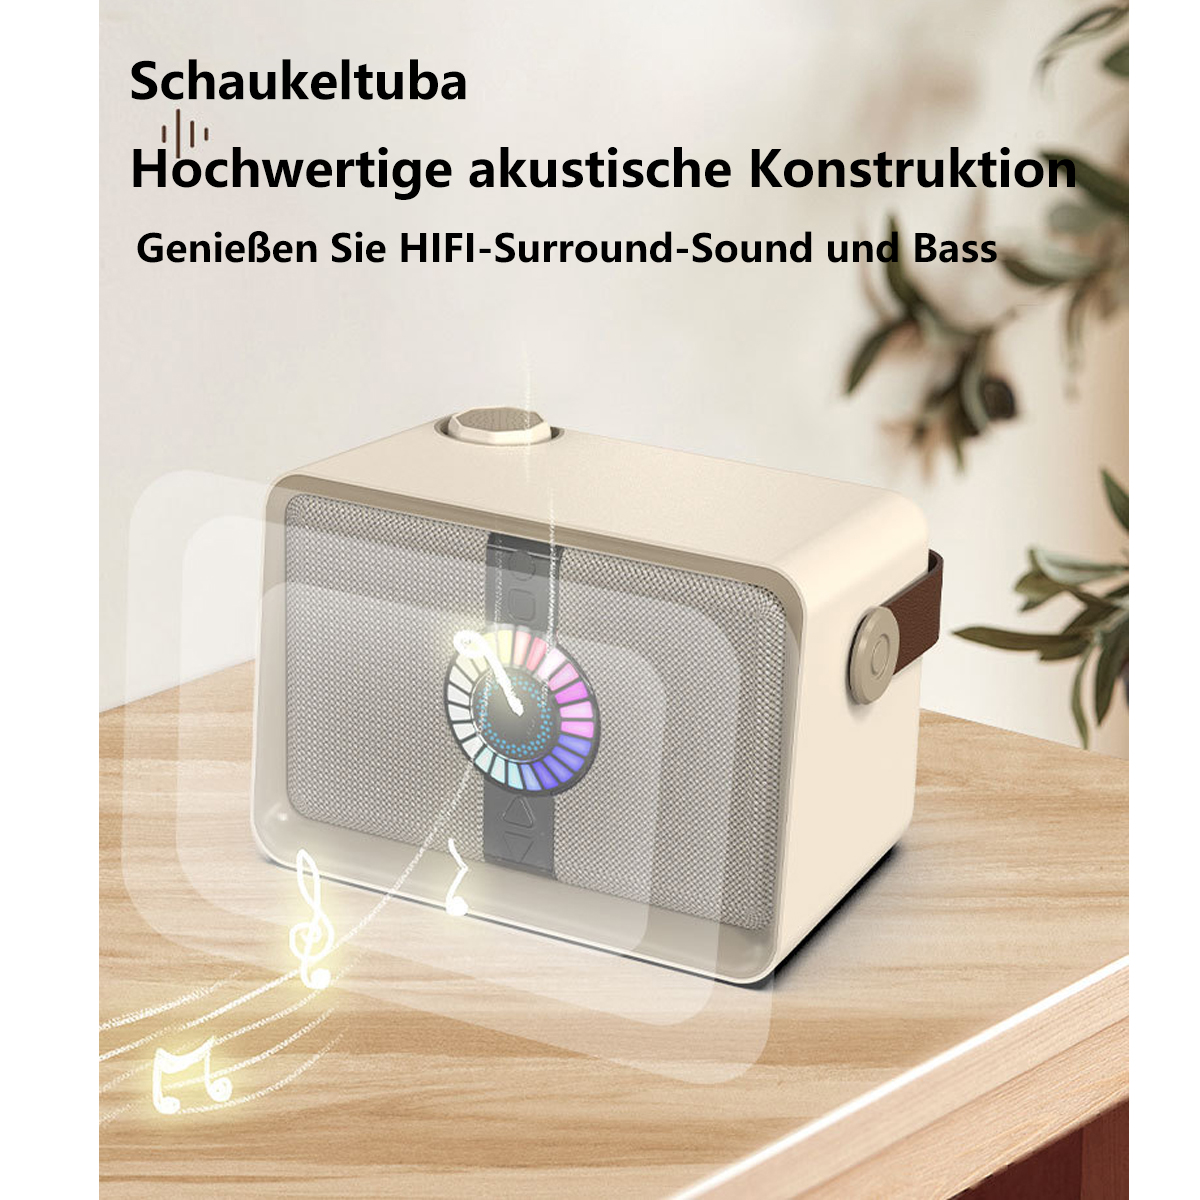 SYNTEK Drahtloser Lautsprecher Grün Drahtloses Sound Mikrofon Grün Bluetooth-Lautsprecher Bluetooth-Lautsprecher, Praxis